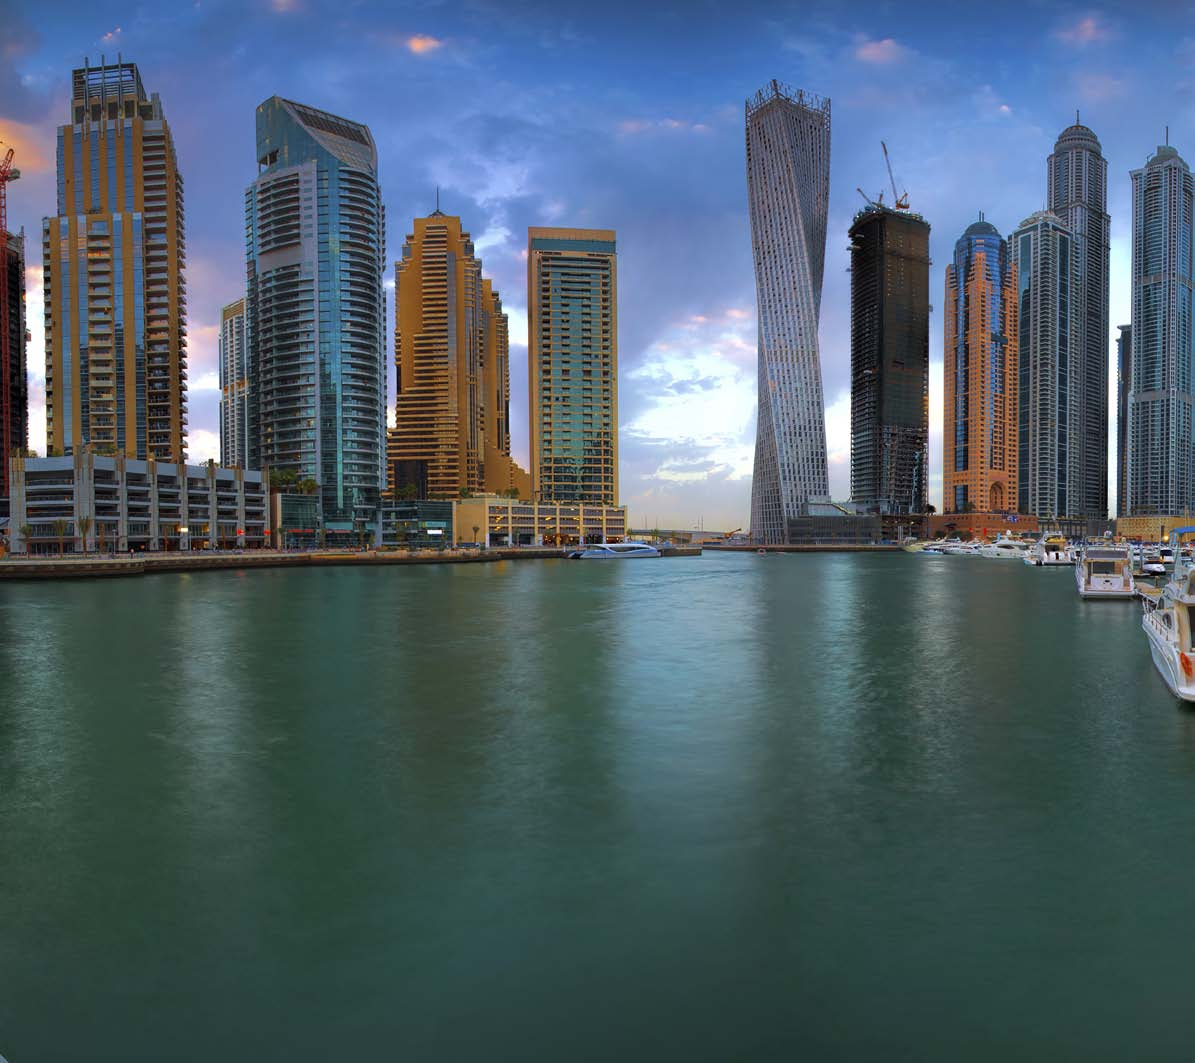 RTA Dubai vergibt weiteren Auftrag an INIT Schiffsverkehr in der Marina wird ebenfalls im INIT ITCS der RTA gesteuert Die Straßen- und Verkehrsbehörde RTA (Roads and Transport Authority) Dubai hat